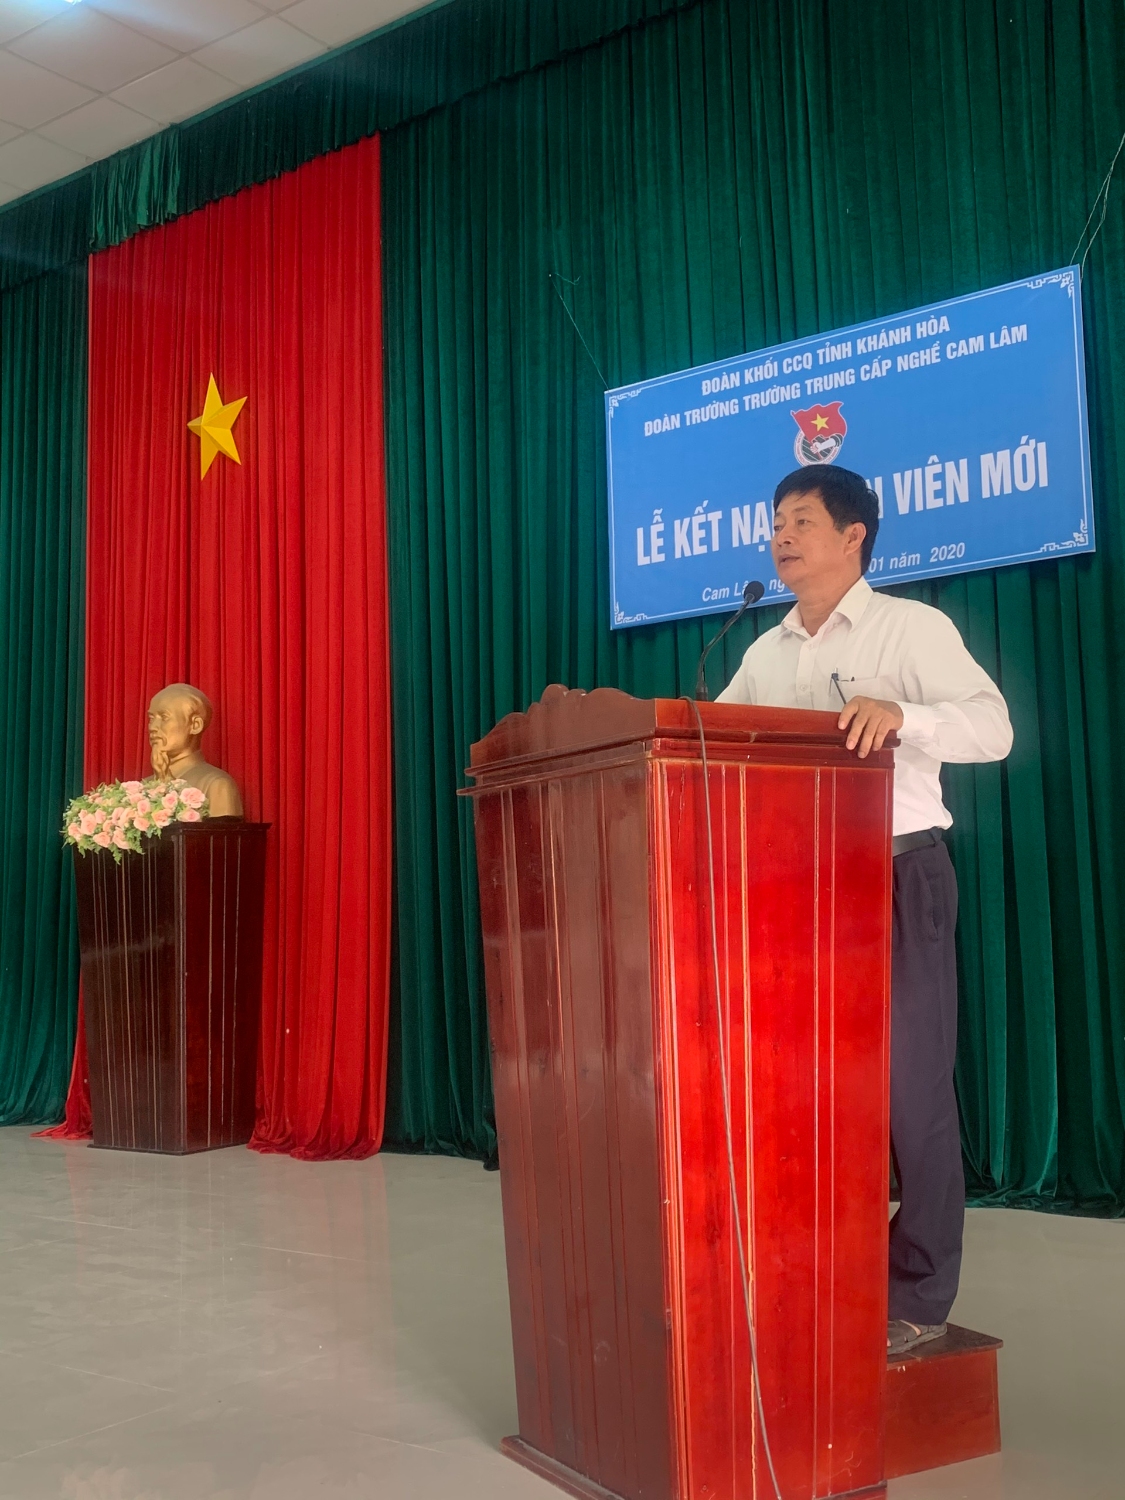 Thầy Nguyễn Xuân Tạo - Hiệu trưởng nhà trường phát biểu trong buổi lễ